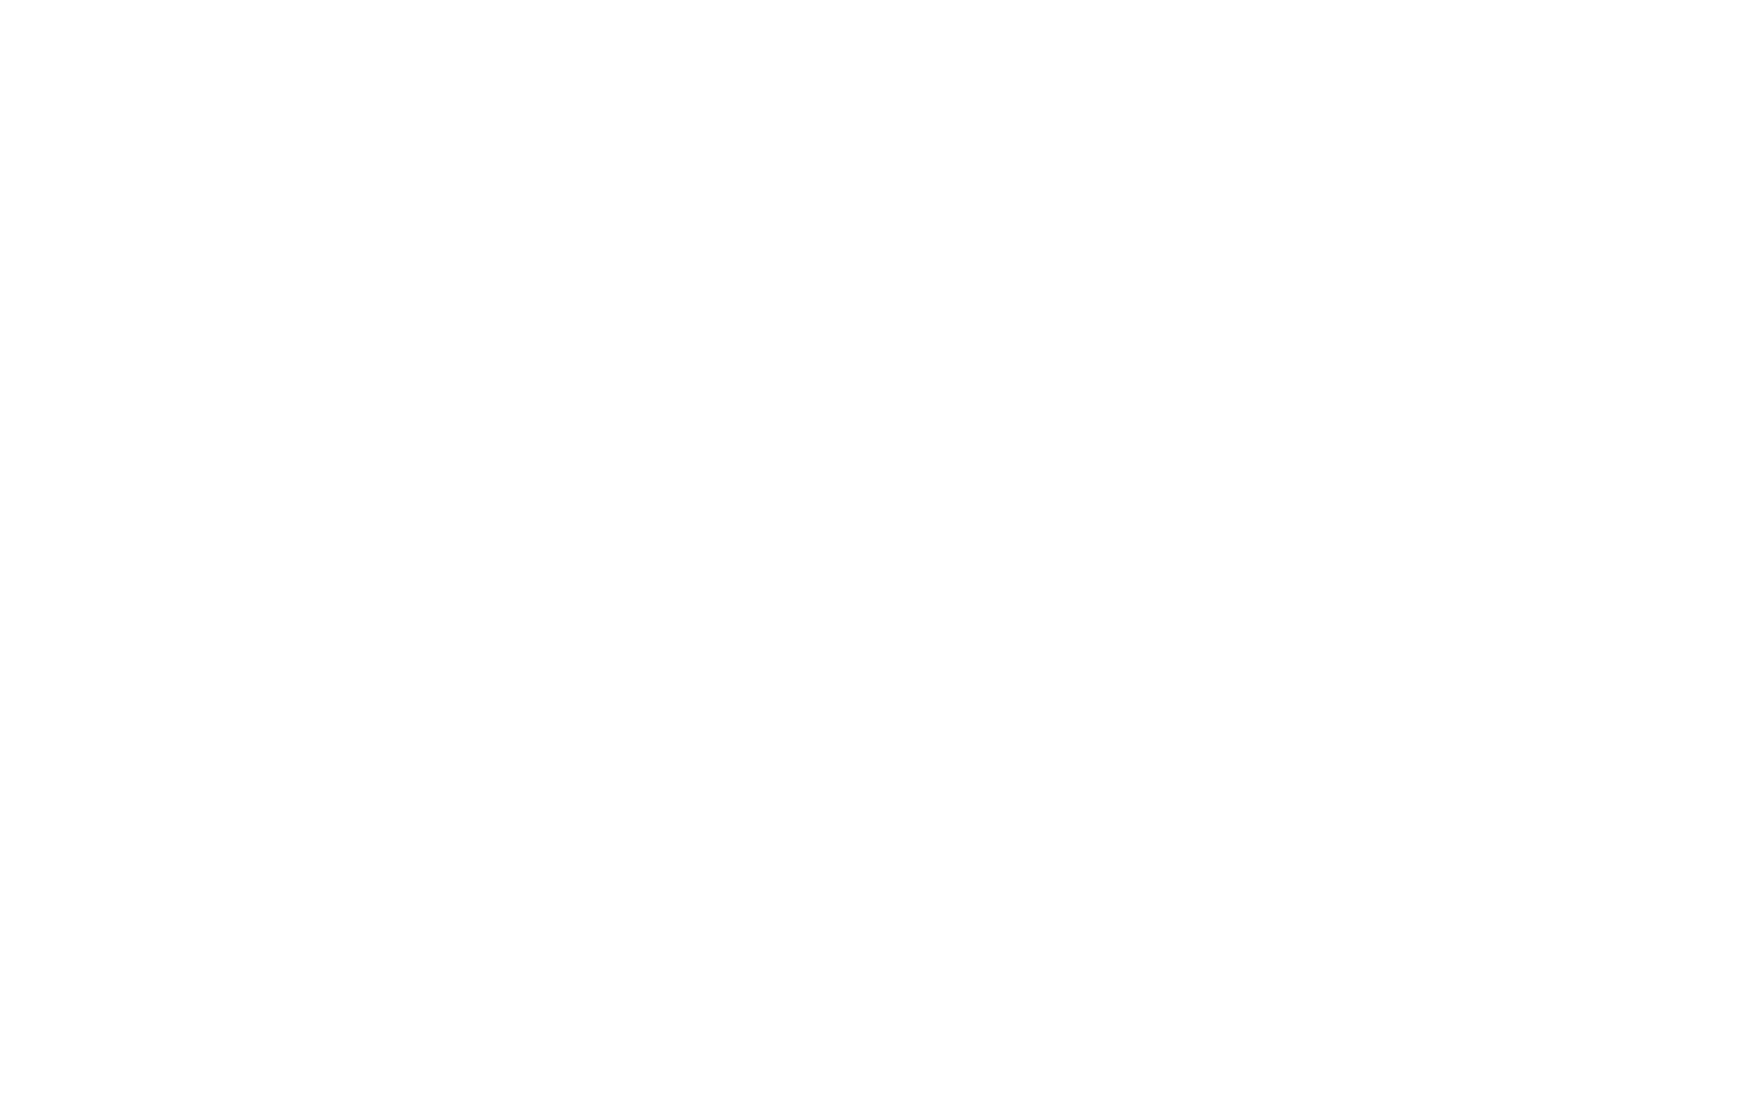 Freal